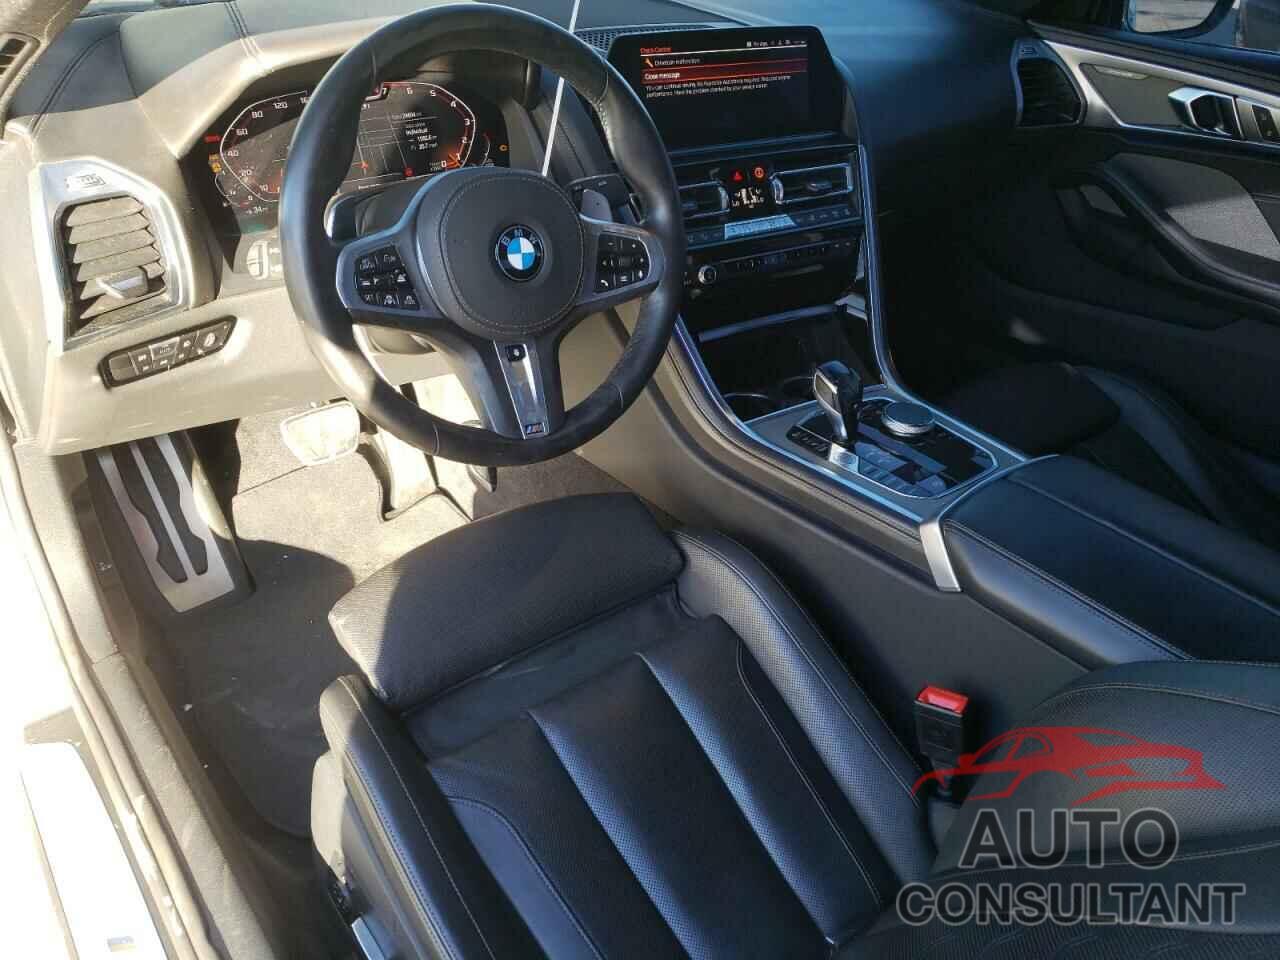 BMW M8 2019 - WBABC4C54KBU95404